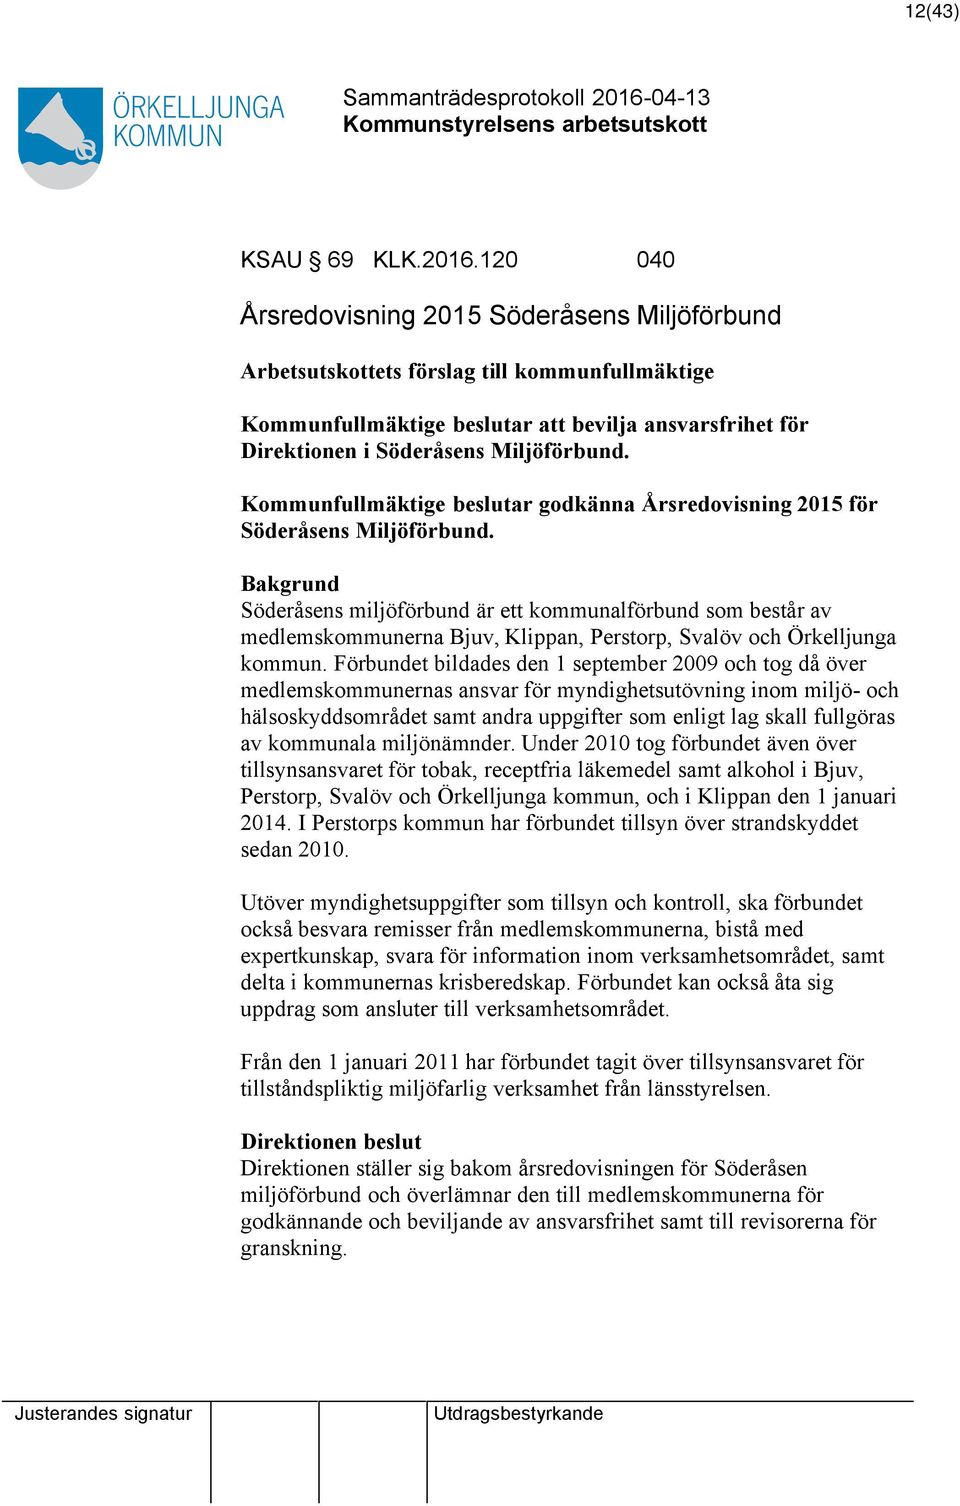 Kommunfullmäktige beslutar godkänna Årsredovisning 2015 för Söderåsens Miljöförbund.